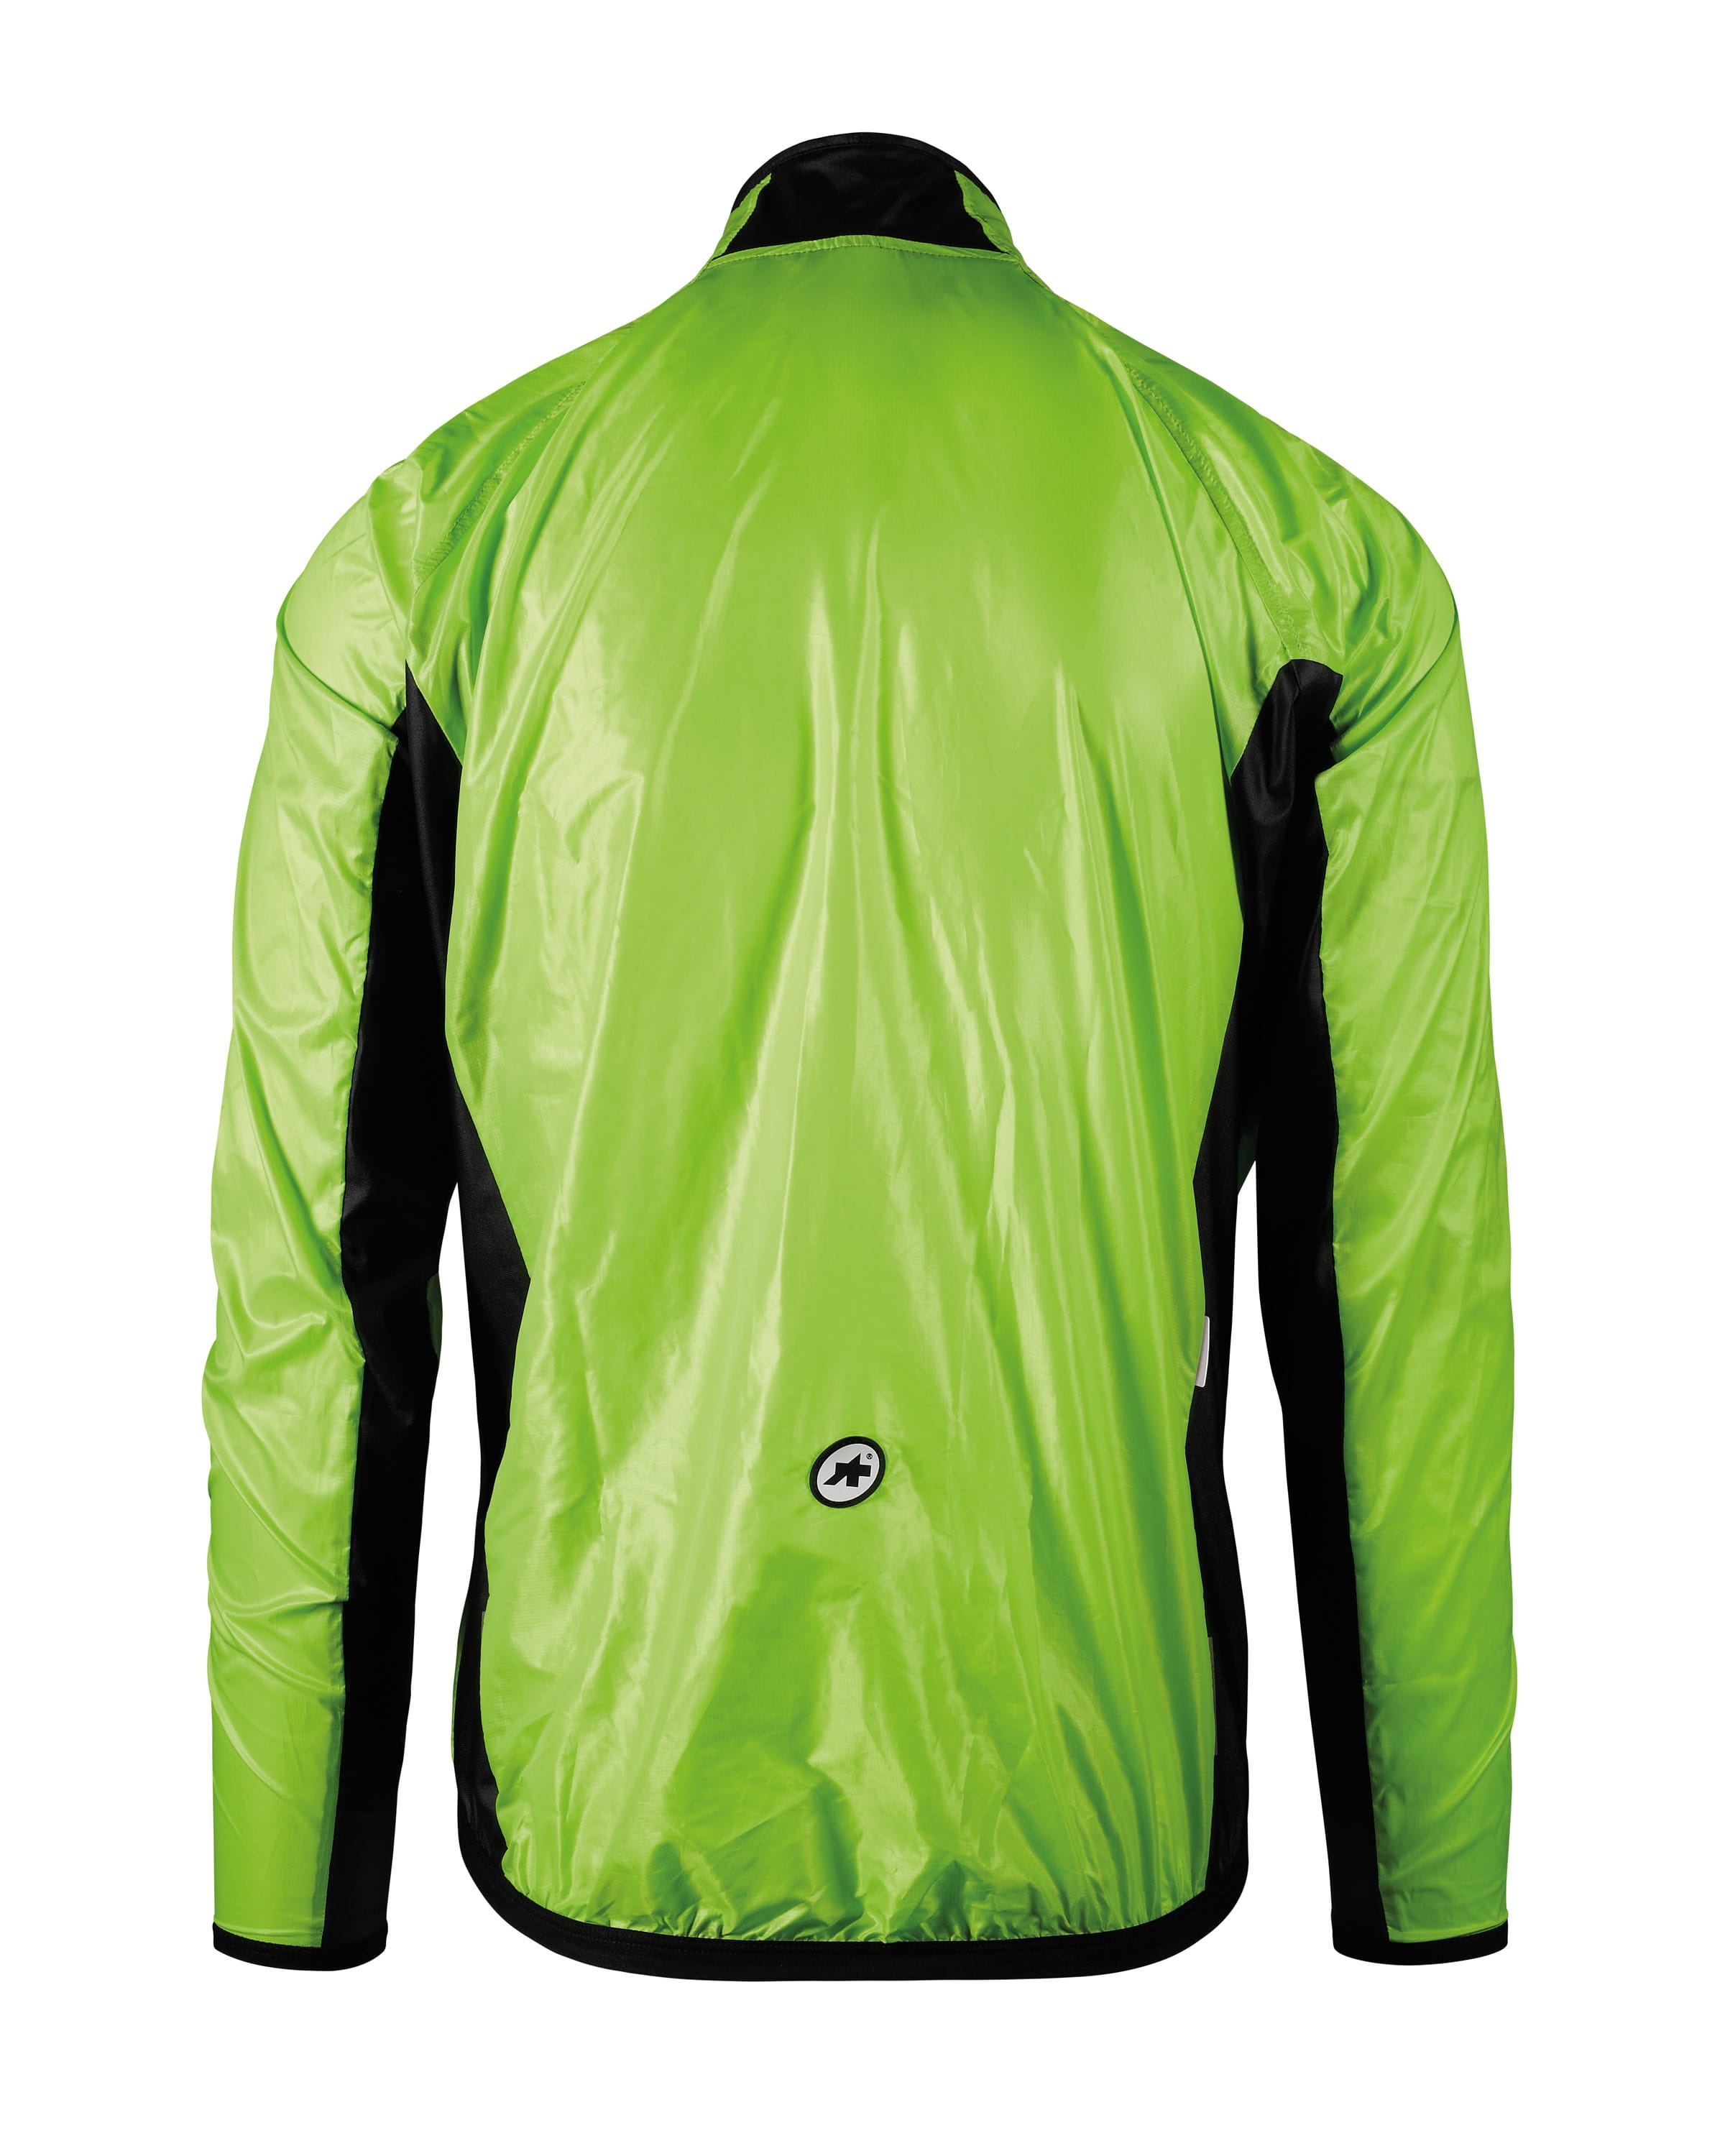 Beklædning - Regntøj & Vindtøj - Assos MILLE GT Wind Jacket - Grøn/Refleks